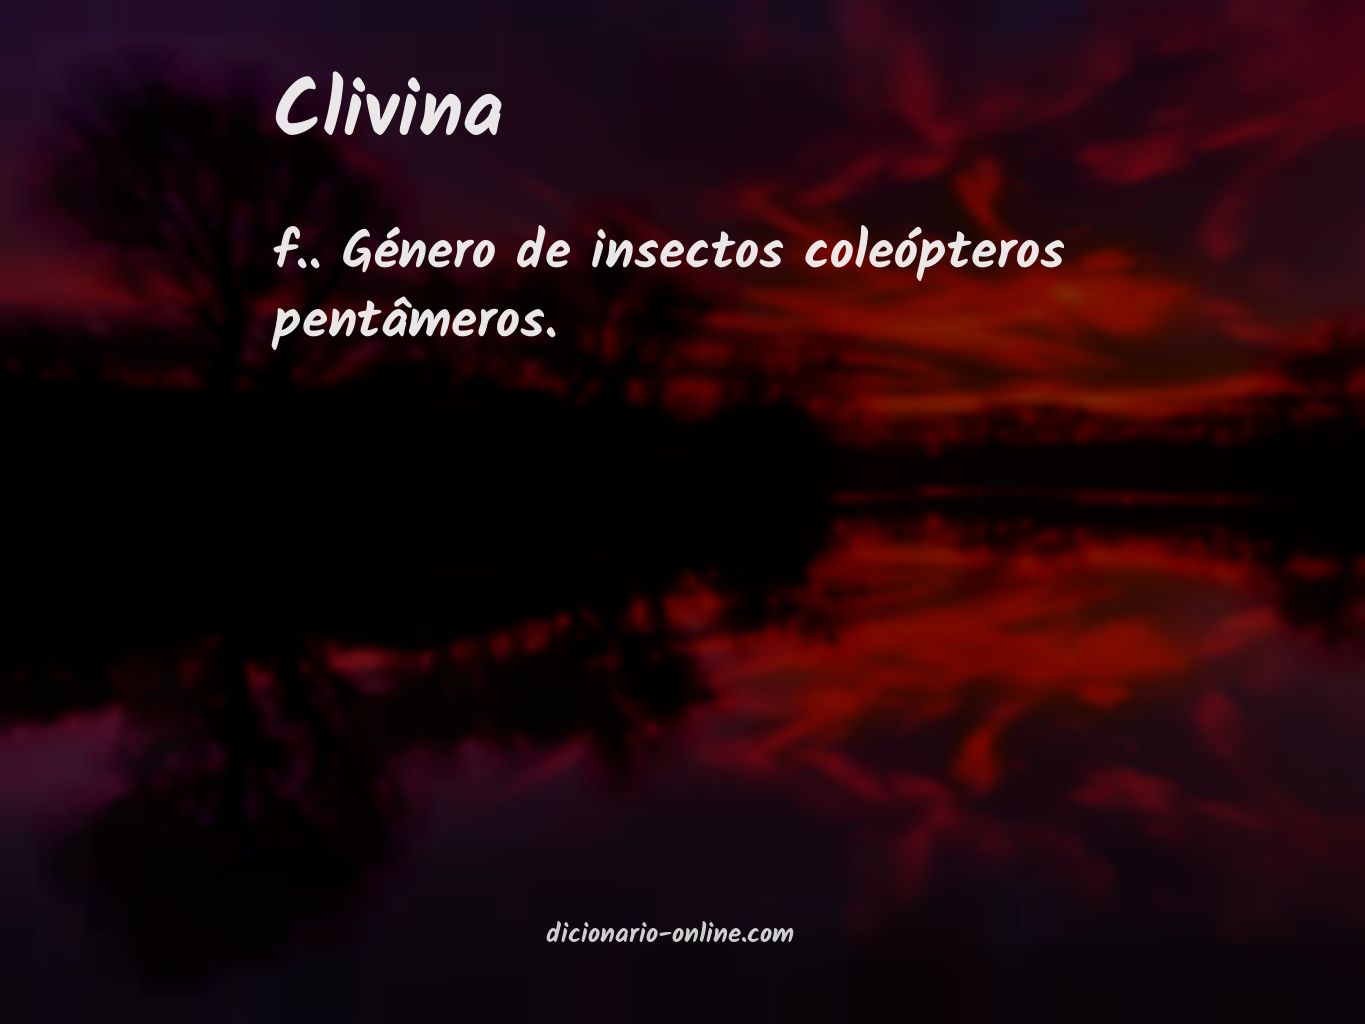 Significado de clivina